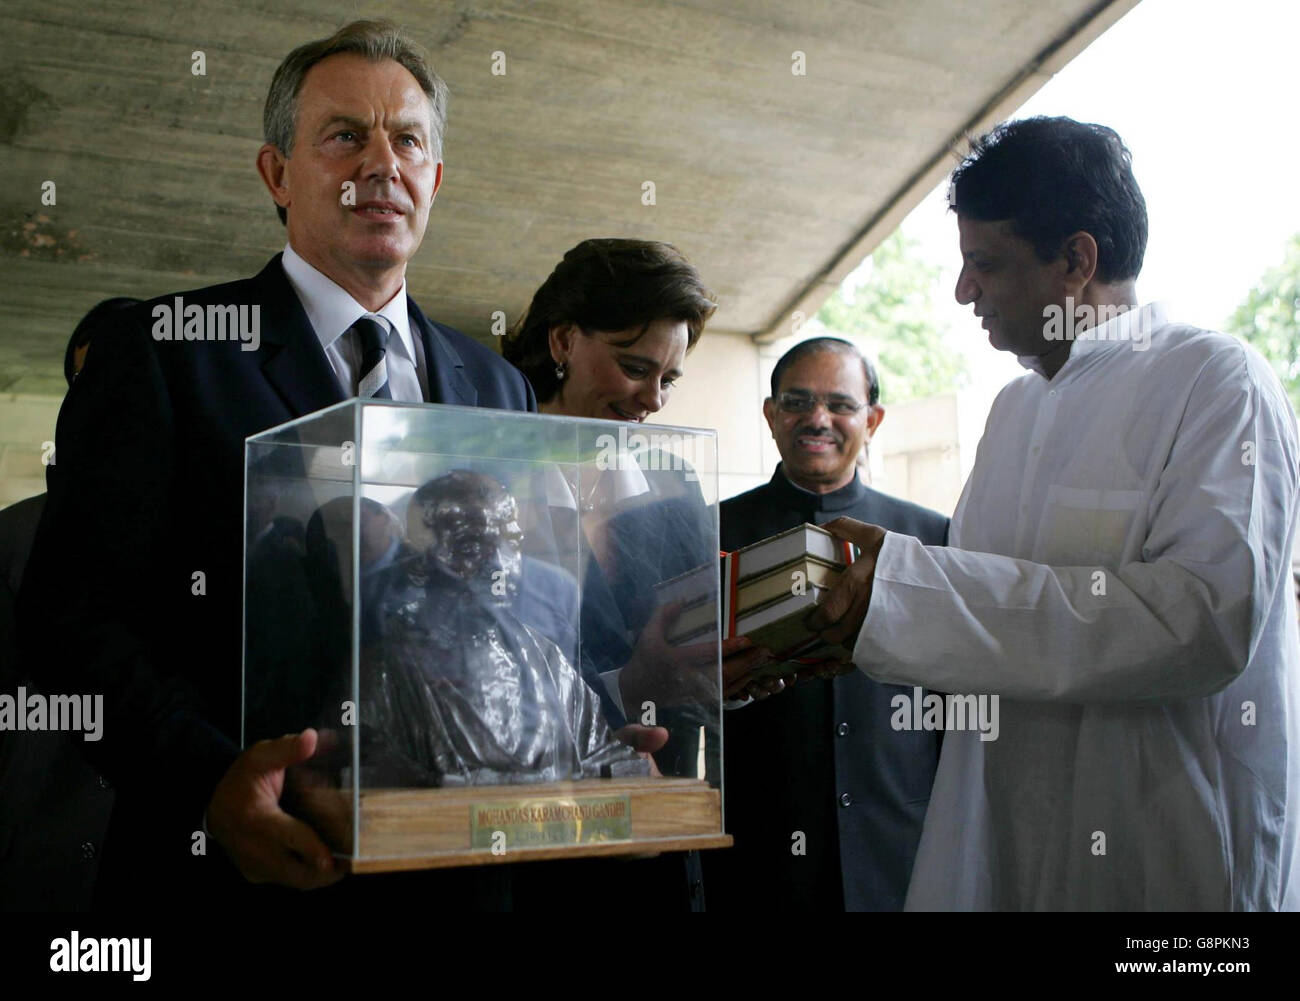 Der britische Premierminister Tony Blair (links) wird nach der Kranzniederlegung am Gandhi-Denkmal in Neu-Delhi am Mittwoch, den 7. September 2005, in Begleitung seiner Frau Cherie (zweite links) mit einer Bronzestatue überreicht. Blair wird am heutigen EU-Indien-Gipfel teilnehmen, wo er argumentieren wird, dass der Westen Indiens Aufstieg als Wirtschaftsmacht begrüßen sollte, anstatt ihn als Bedrohung für den Diebstahl von Arbeitsplätzen zu fürchten. Siehe PA Geschichte INDIEN Blair. DRÜCKEN Sie VERBANDSFOTO. Bildnachweis sollte lauten: John D McHugh/PA/WPA Rota AFP. Stockfoto